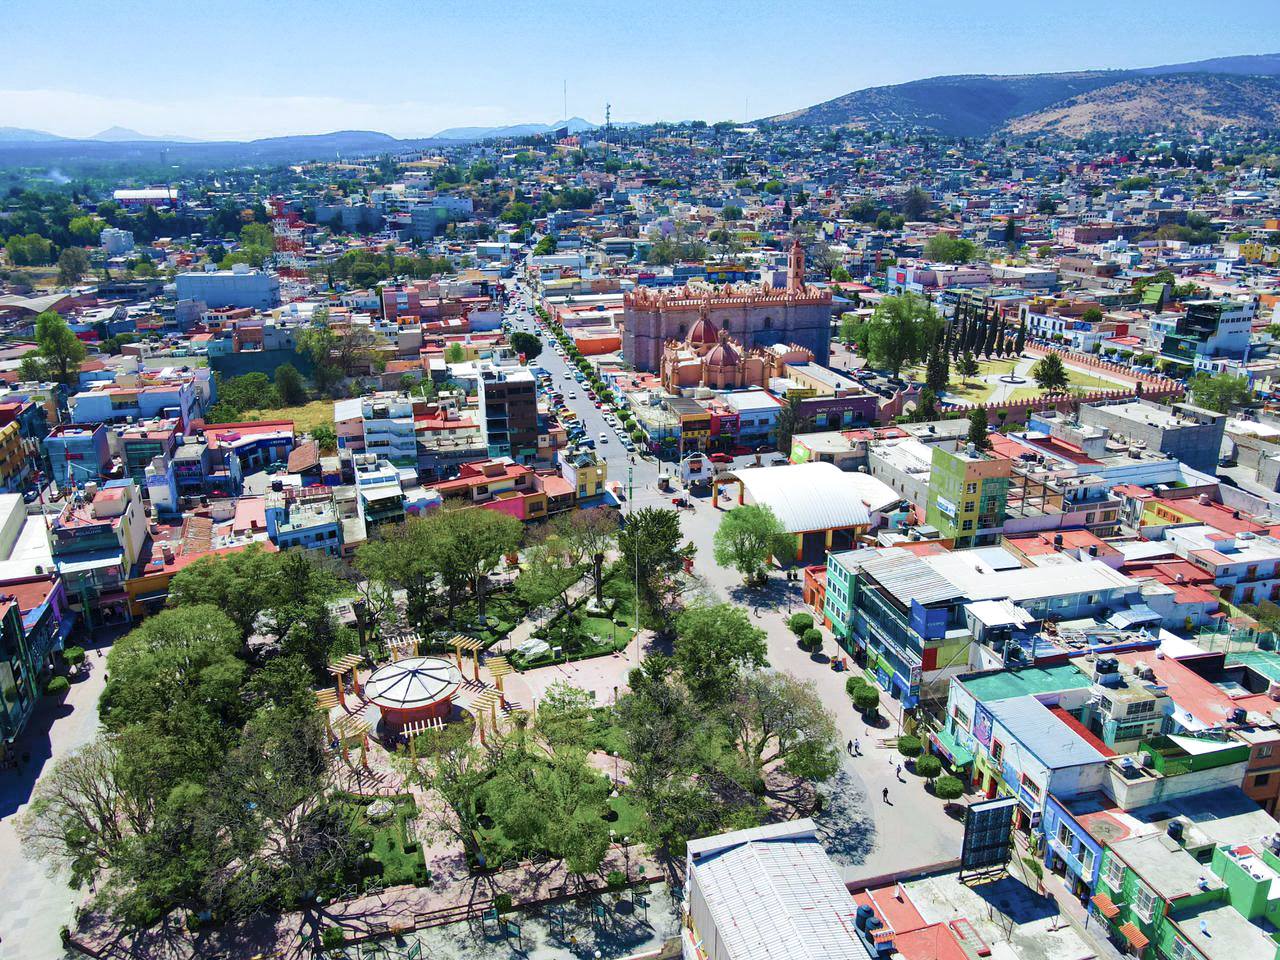 Tula busca convertirse en capital turística de Hidalgo tras la pandemia de COVID-19